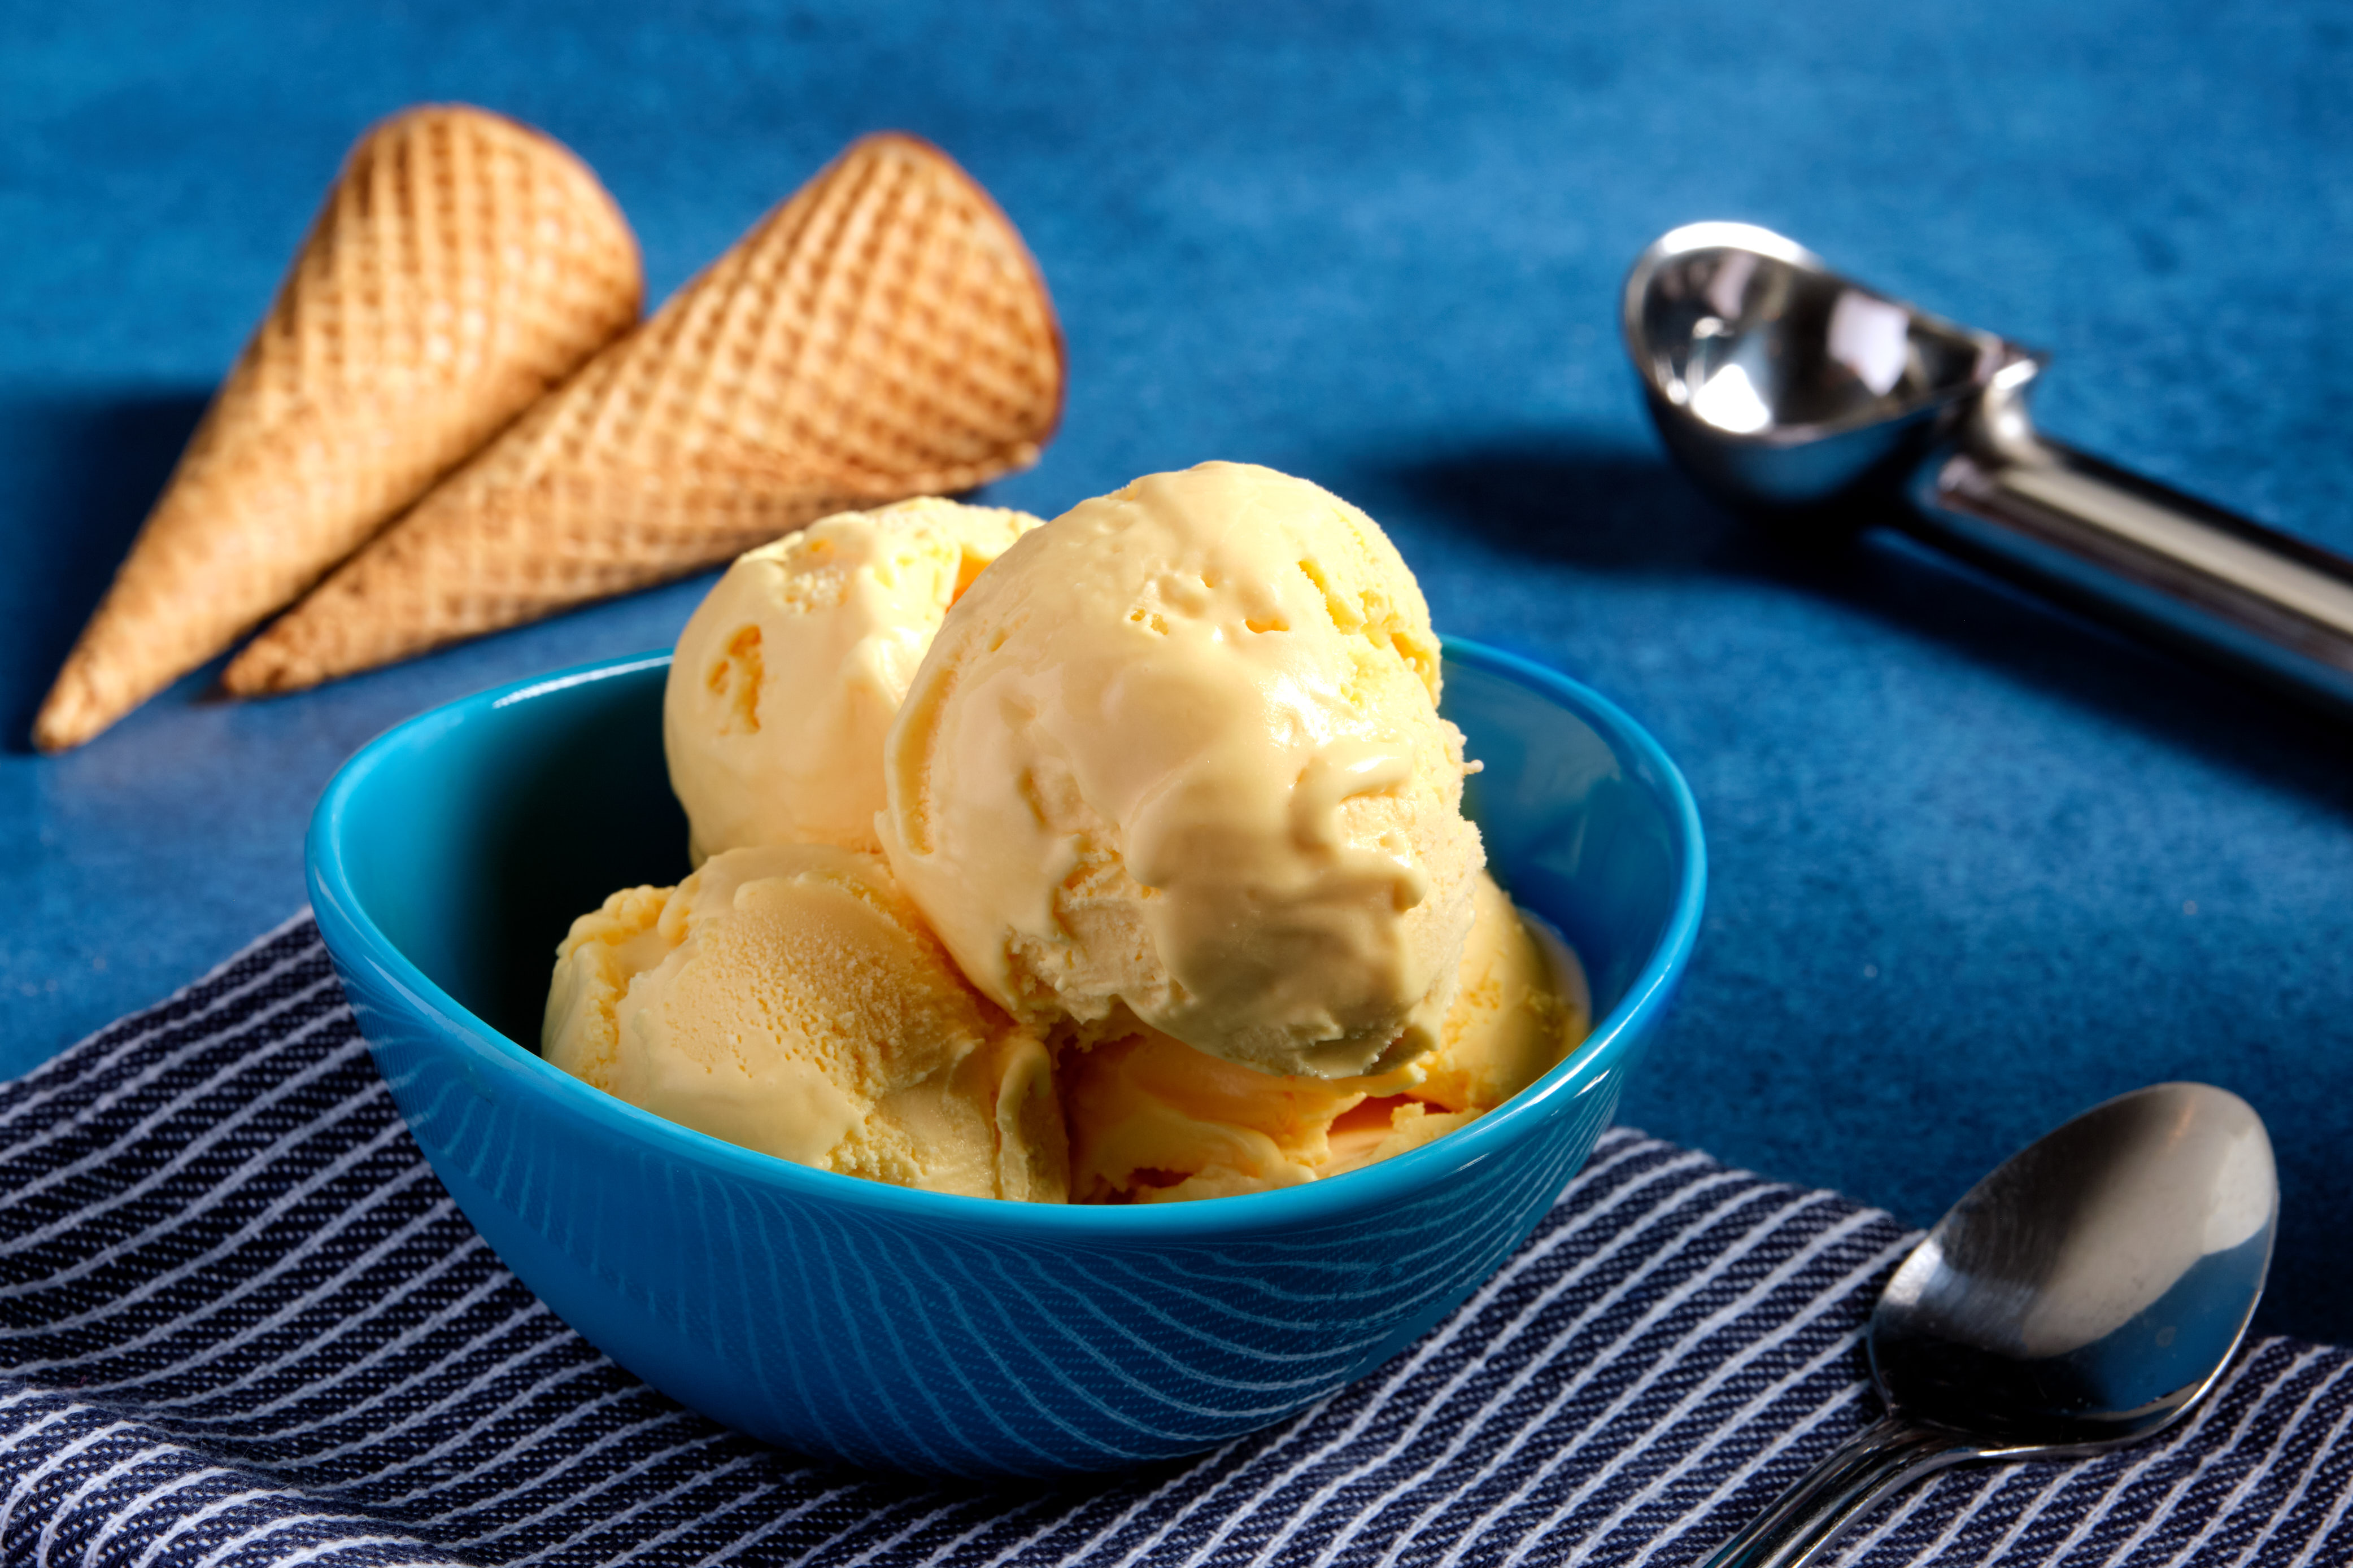 蓝碗里装着四勺奶酪通心粉口味的冰淇淋，旁边放着一勺冰淇淋和两个蛋卷。